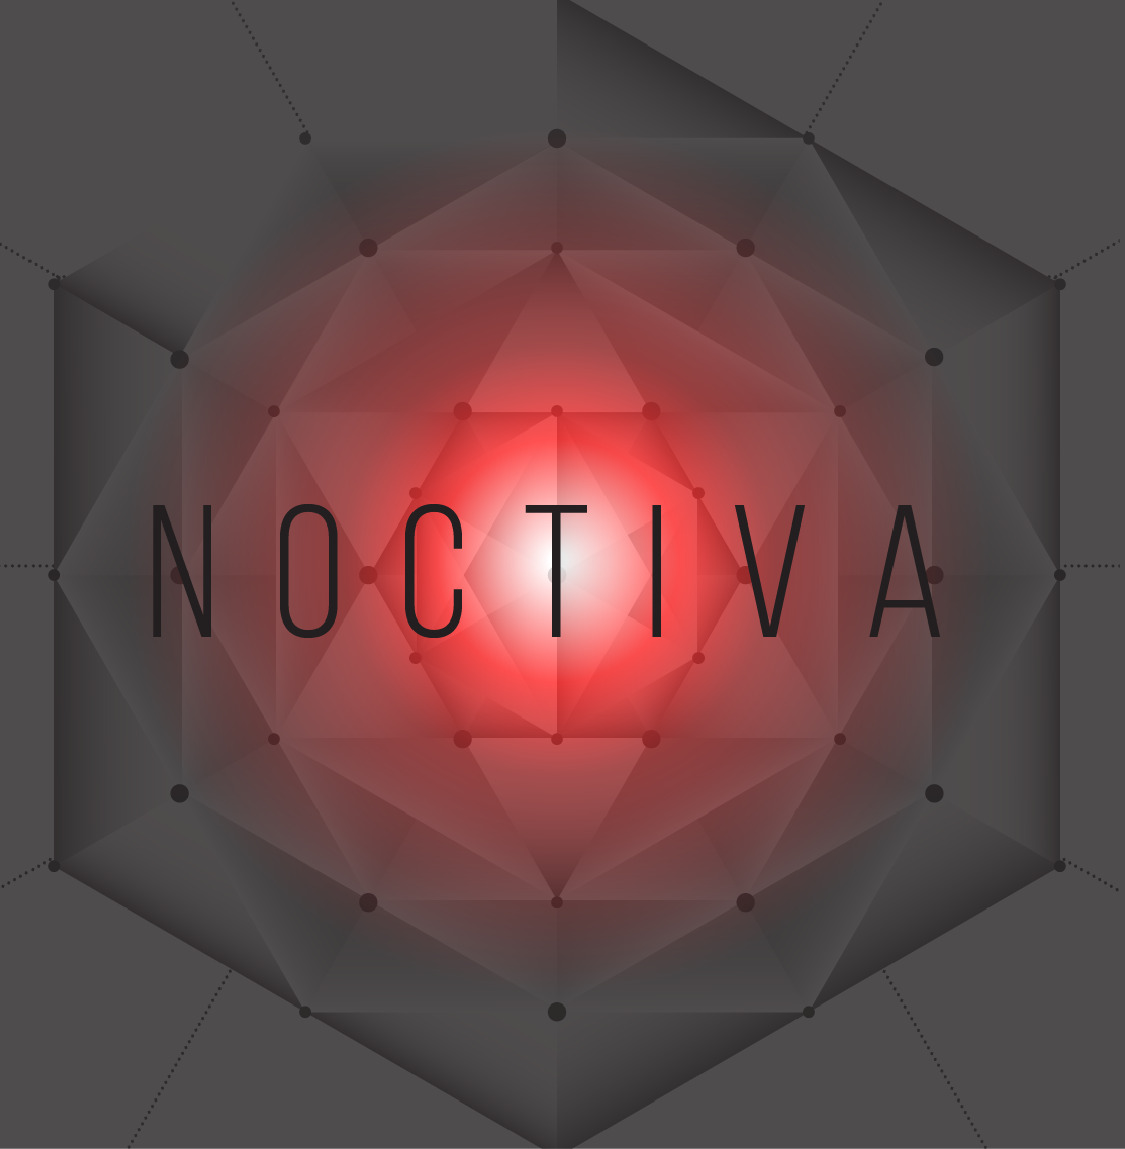 Noctiva – Divine Intervention